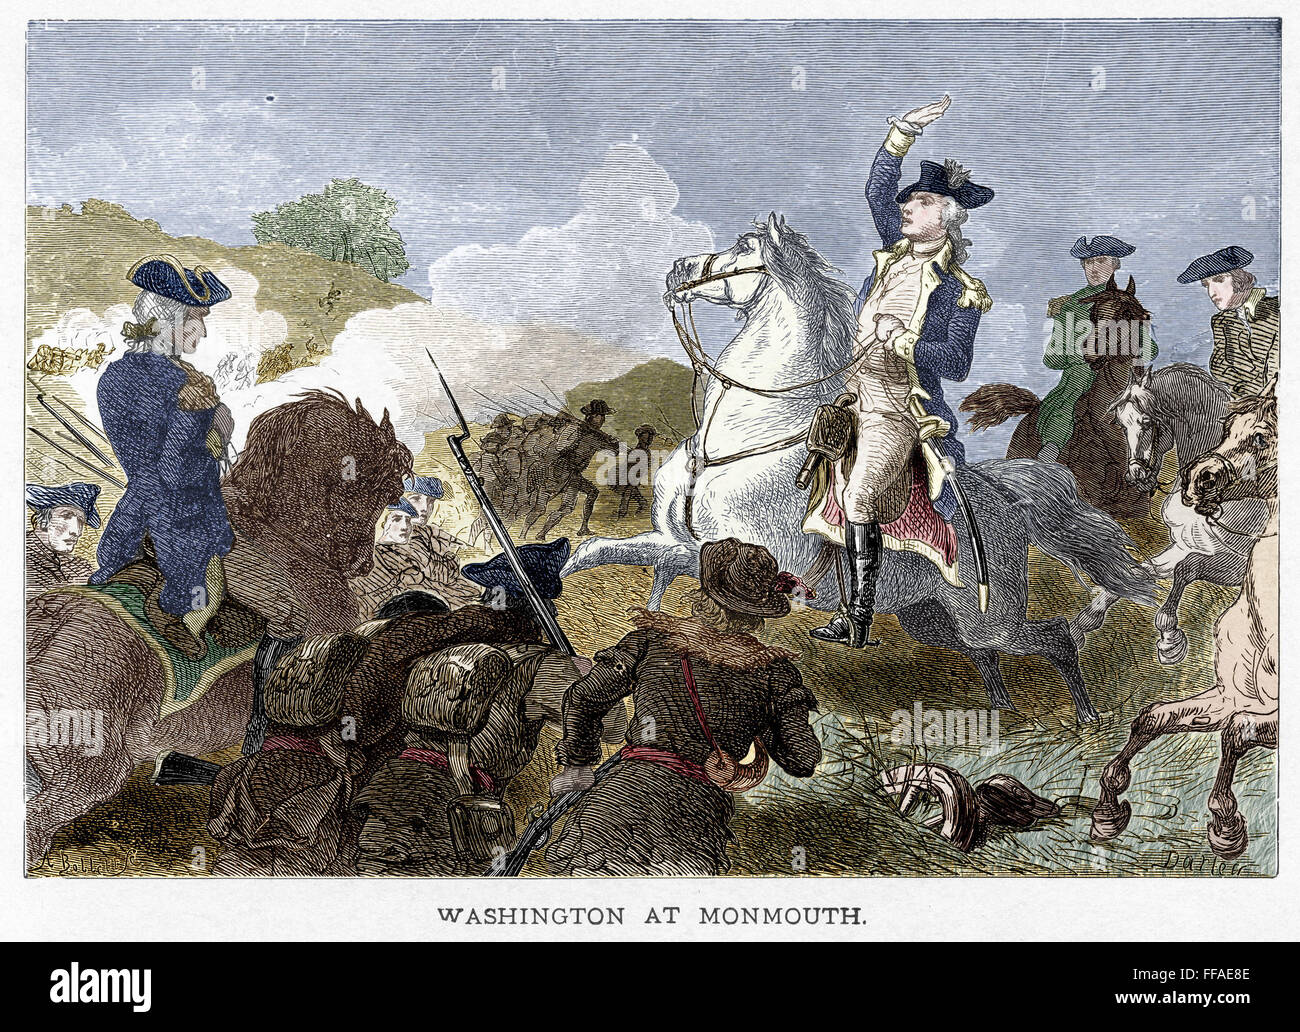 Battaglia di MONMOUTH, 1778. /NGeneral George Washington nella battaglia di Monmouth, New Jersey, il 28 giugno 1778. Incisione su legno, americano, xix secolo. Foto Stock